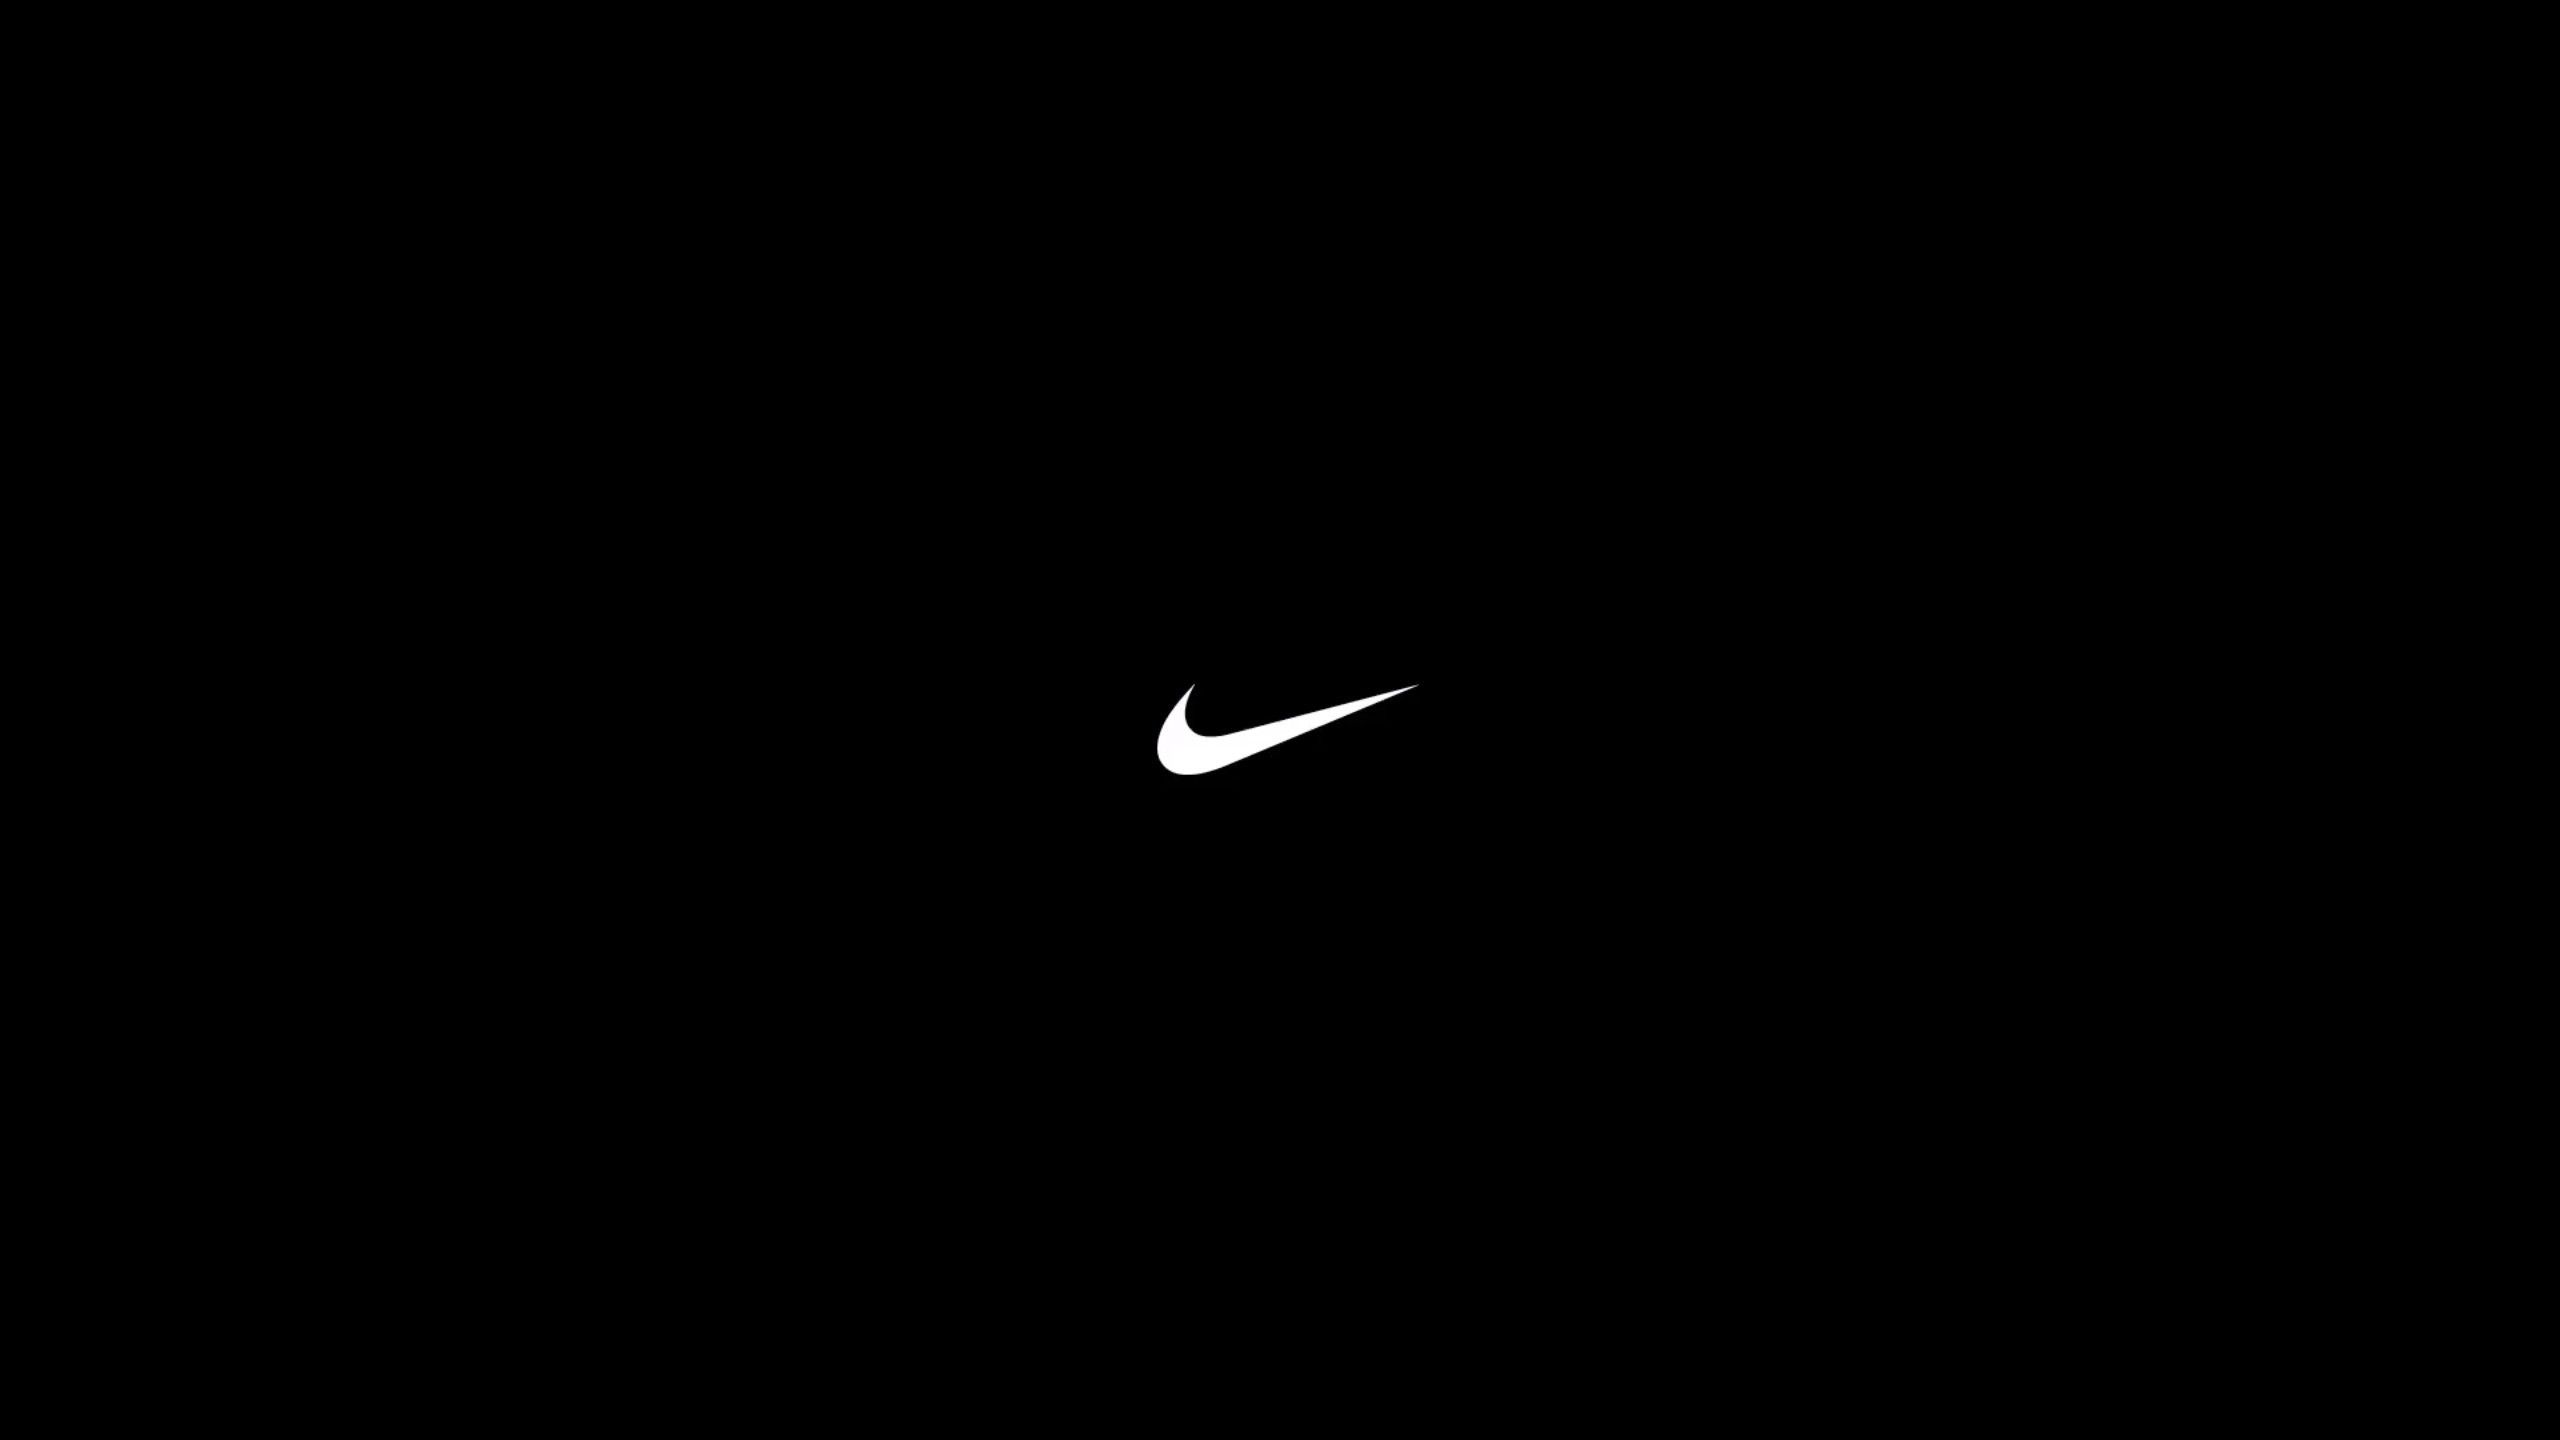 Black Nike Logo Wallpapers On Wallpaperdog